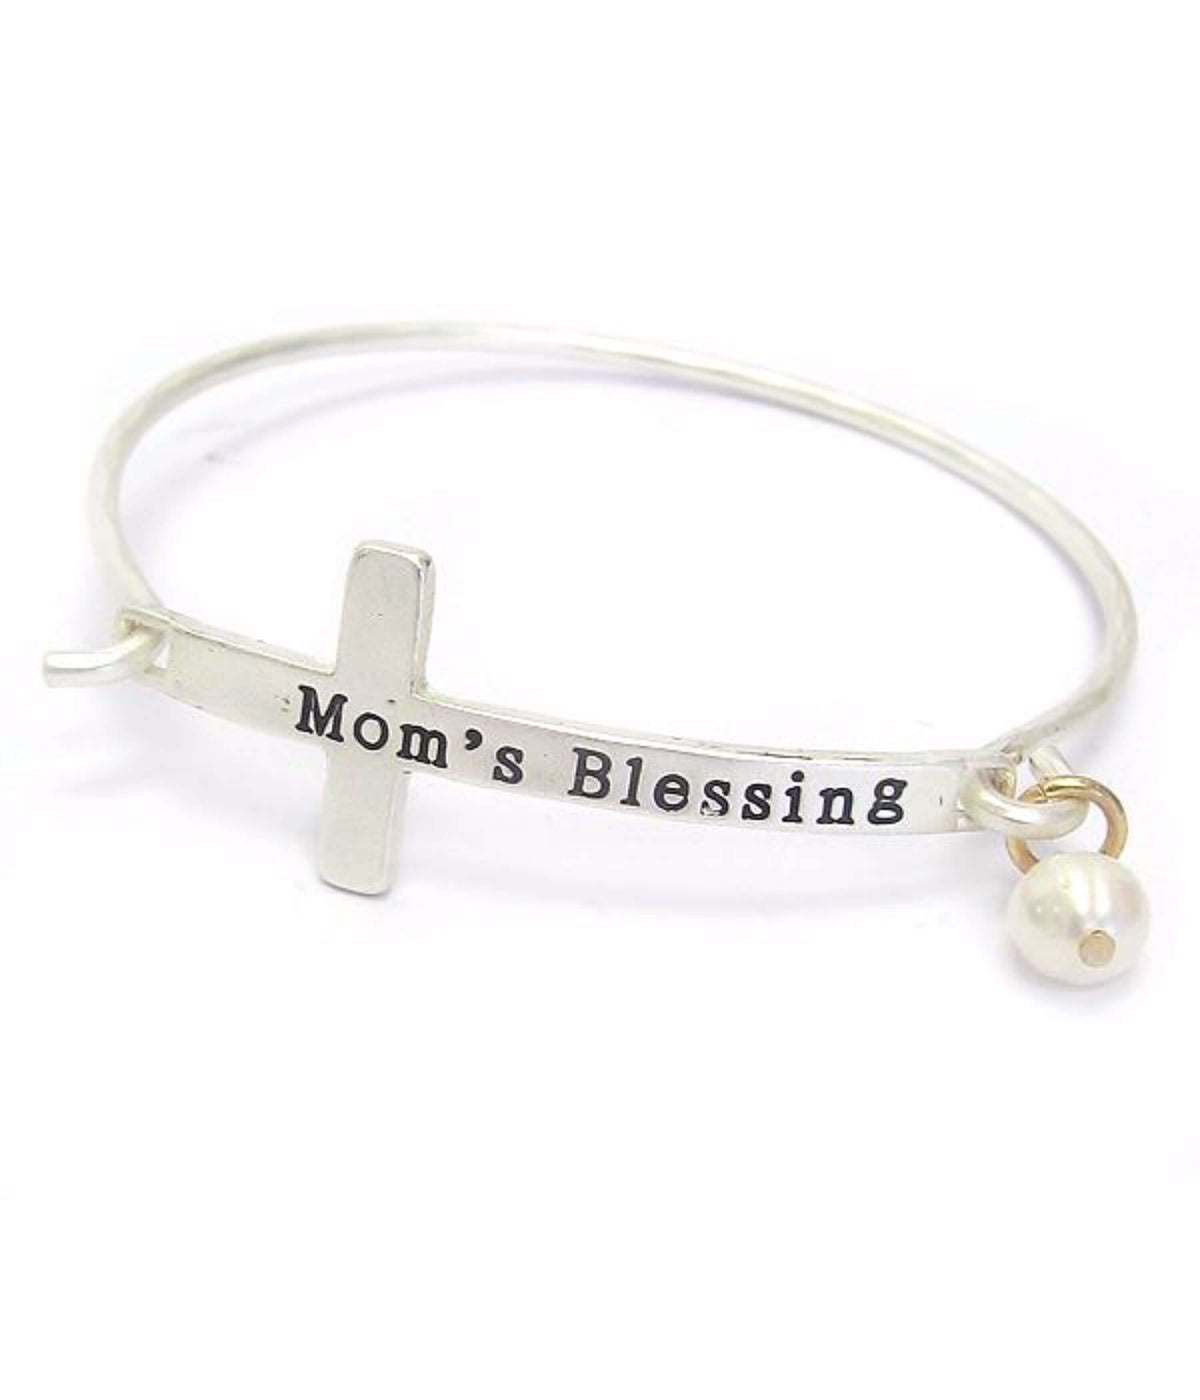 Silver Cross Mom's Blessing Bangle Bracelet - The House of Awareness